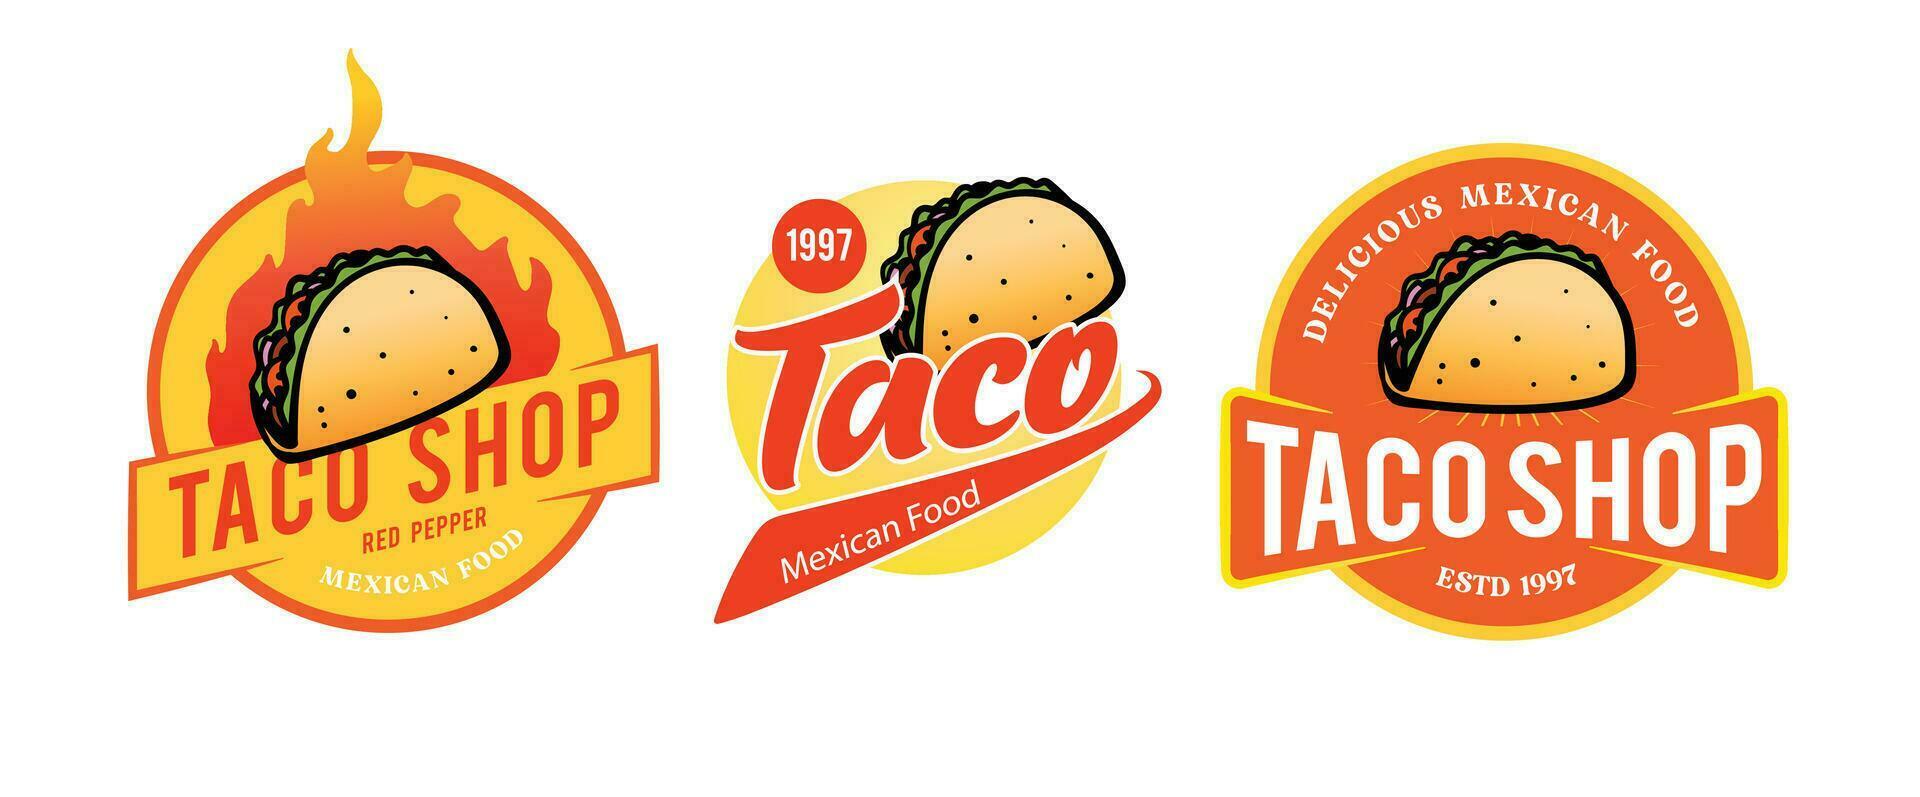 taco mexican food logo template vector